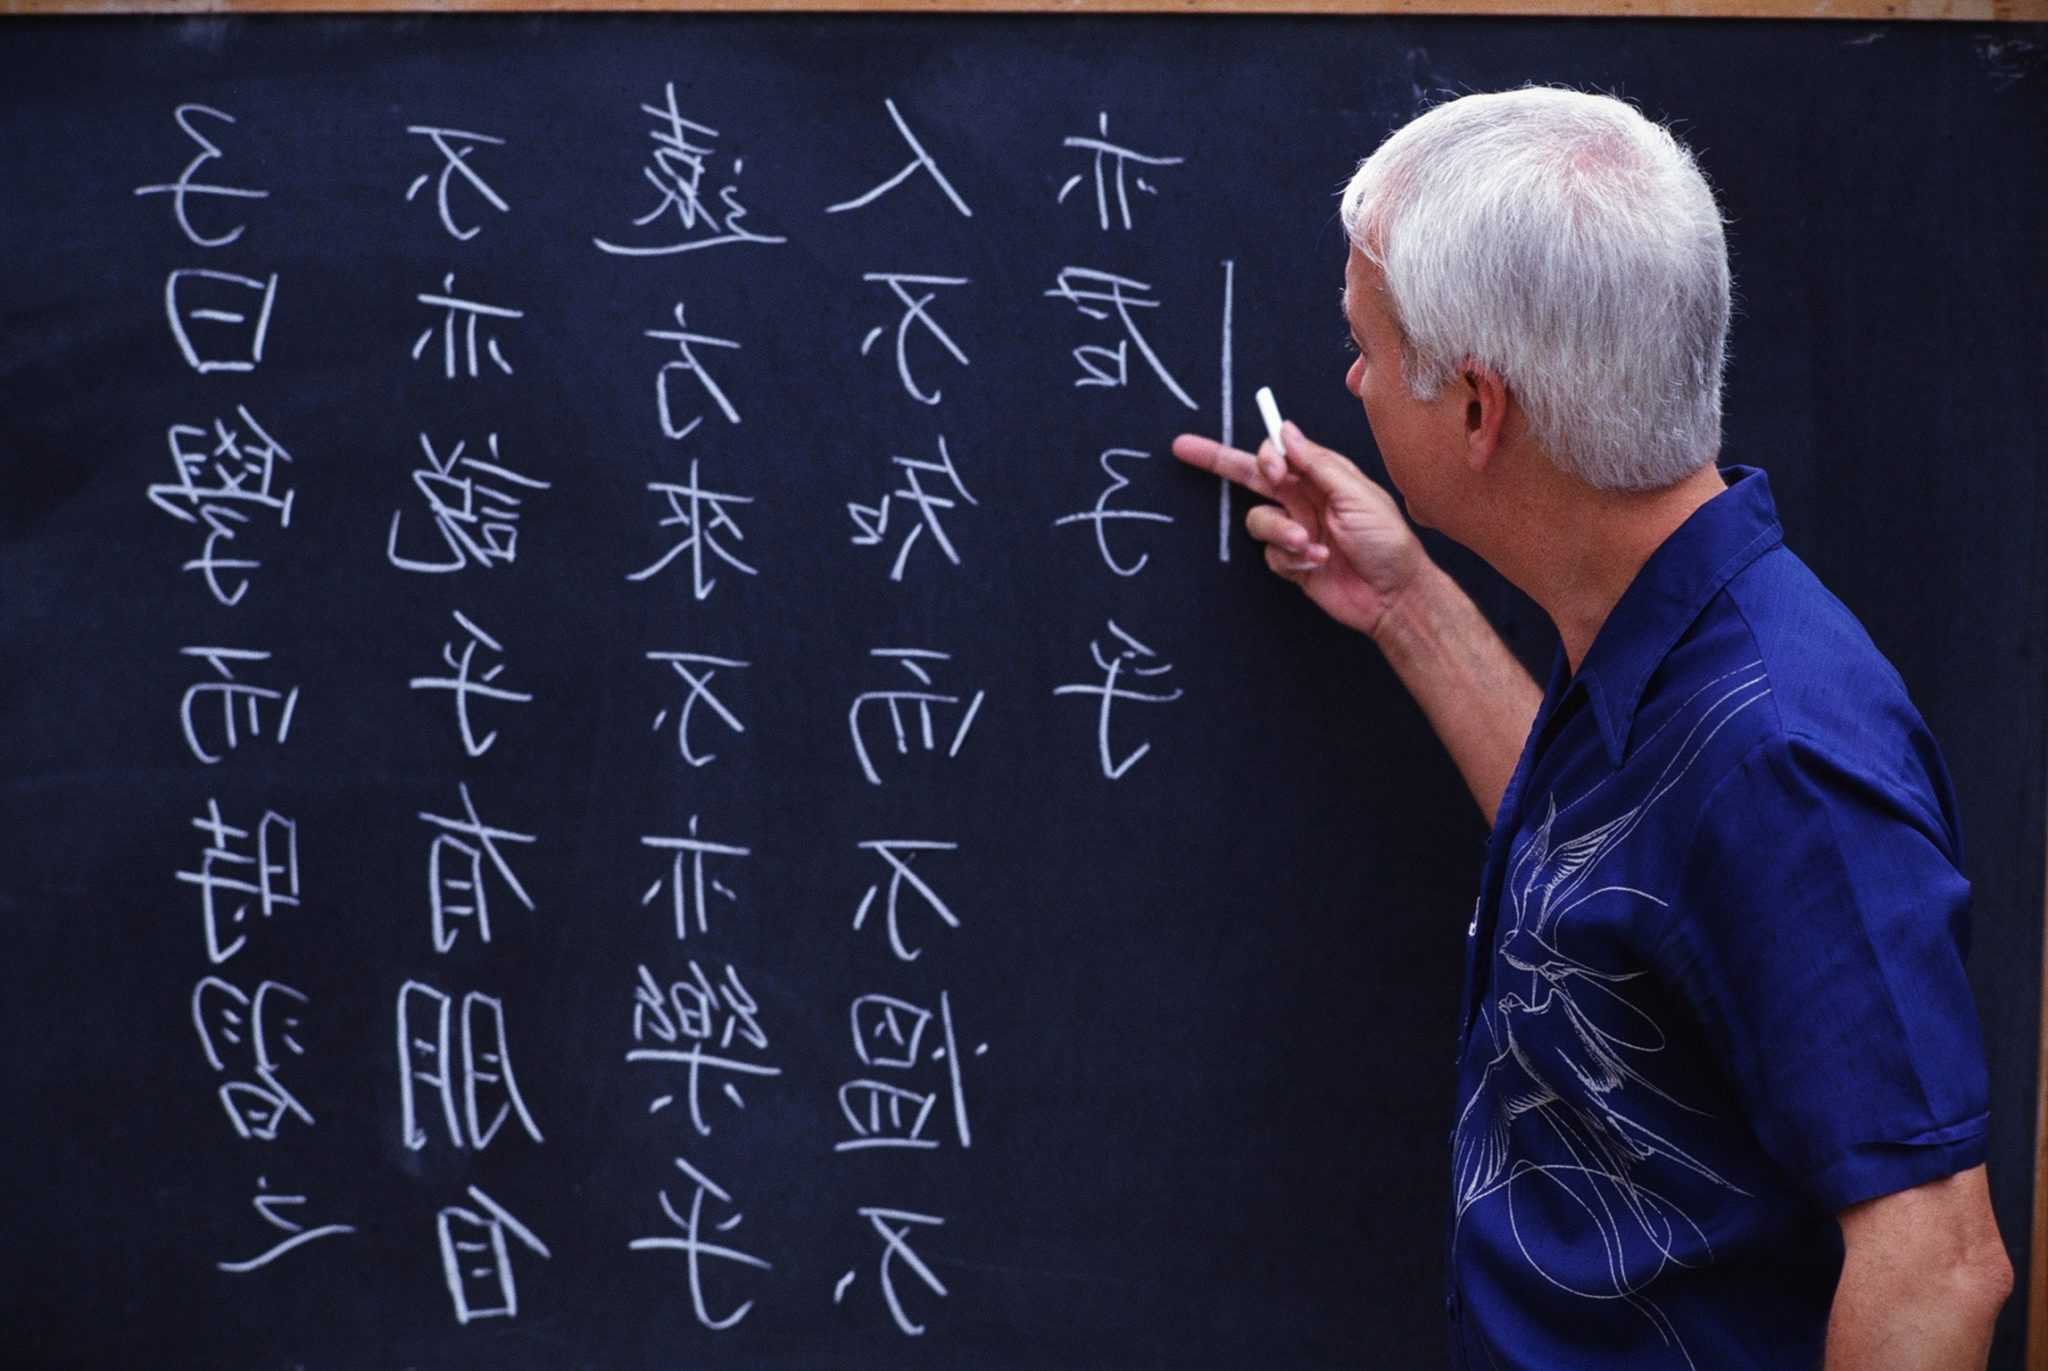 распознавание китайских иероглифов по фото